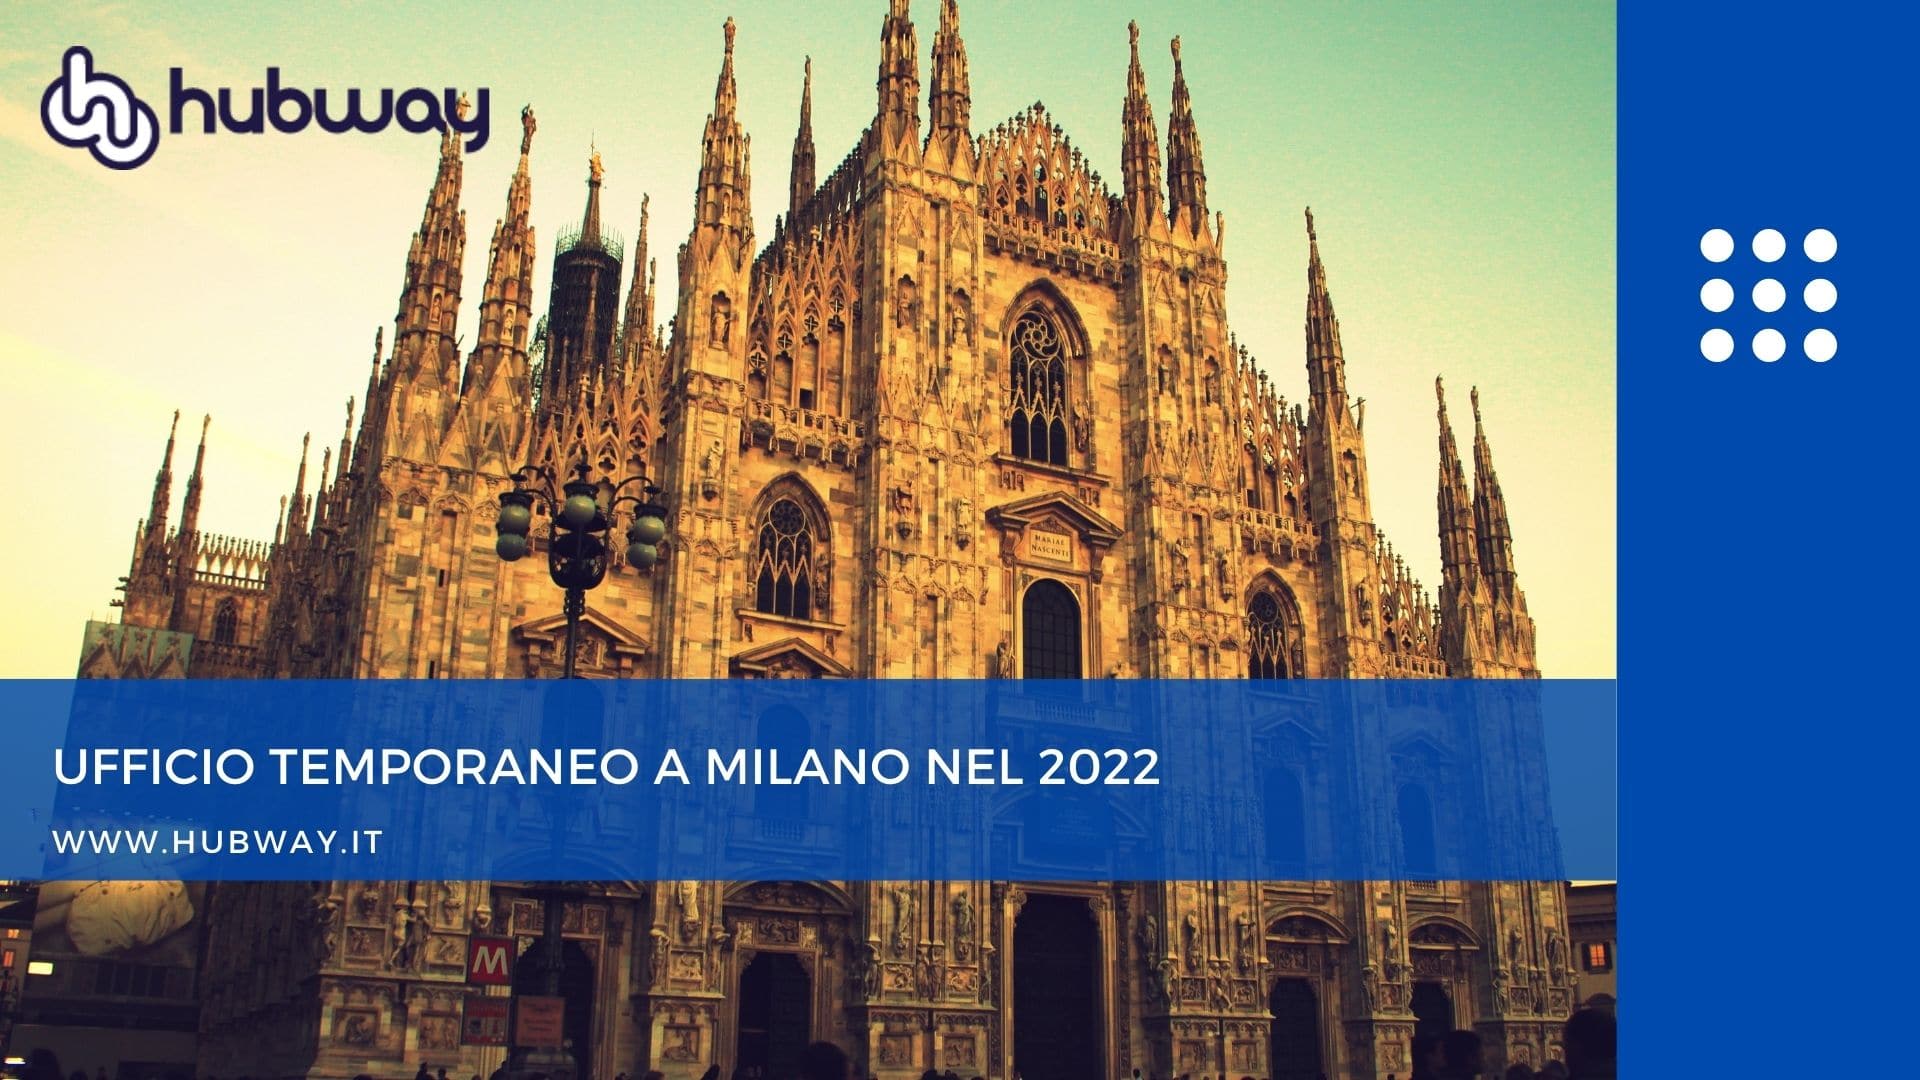 Ufficio temporaneo a Milano nel 2022